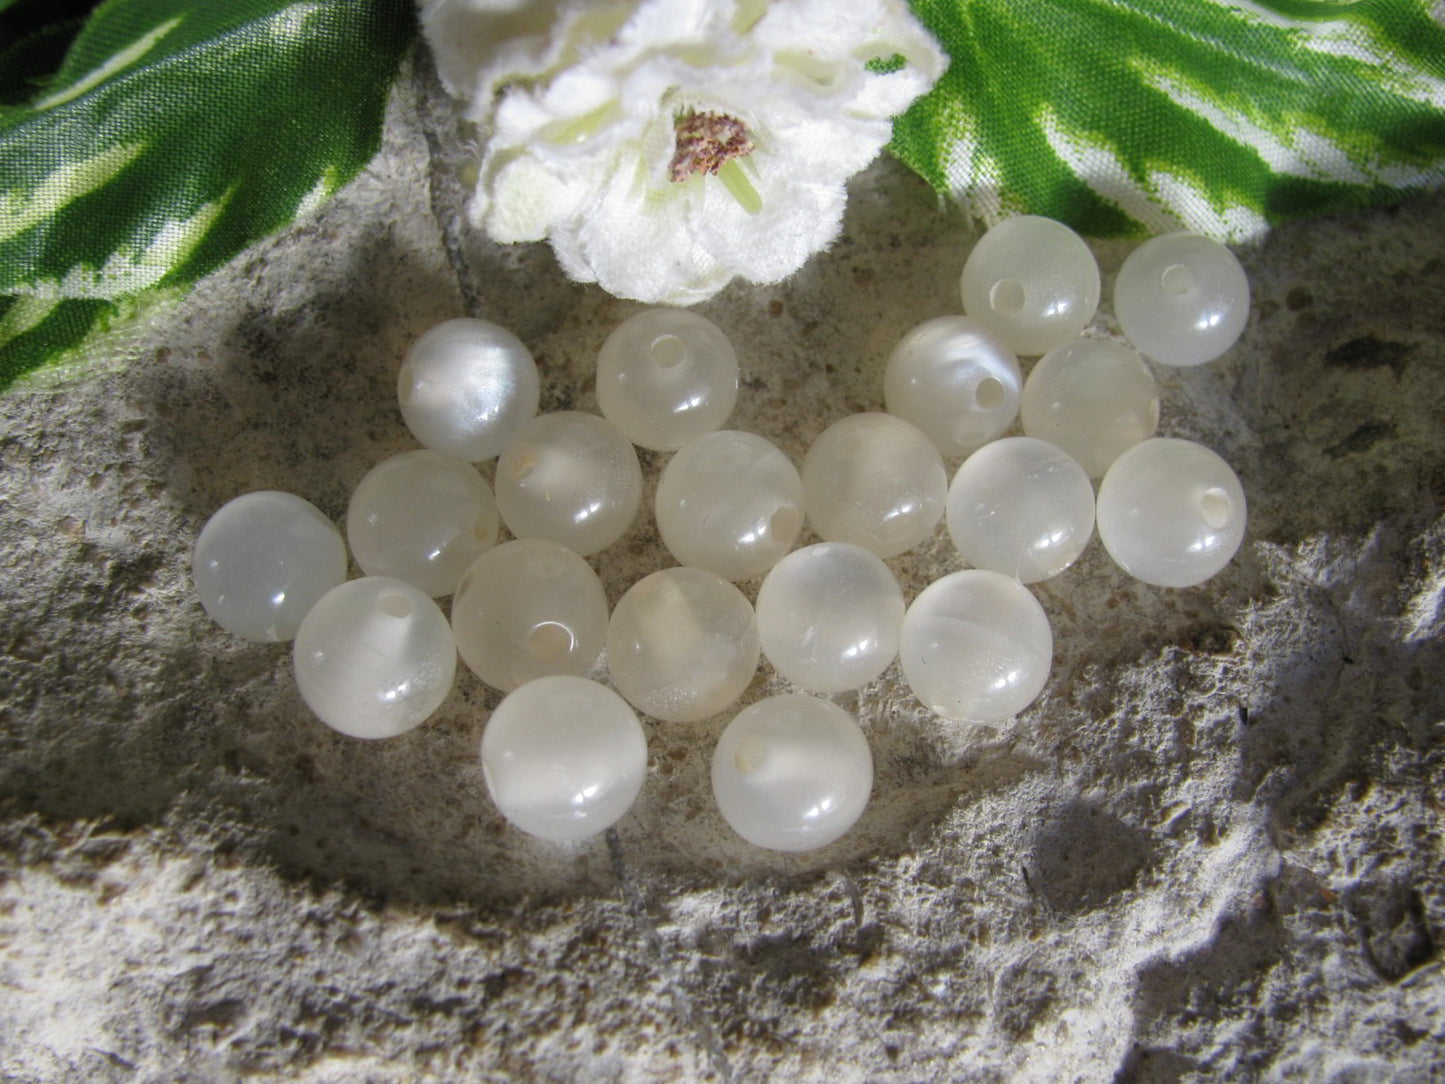 100 Resin Perlen Weiß elfenbein glänzend, 8mm, Schmuck und Perlen basteln, fädeln